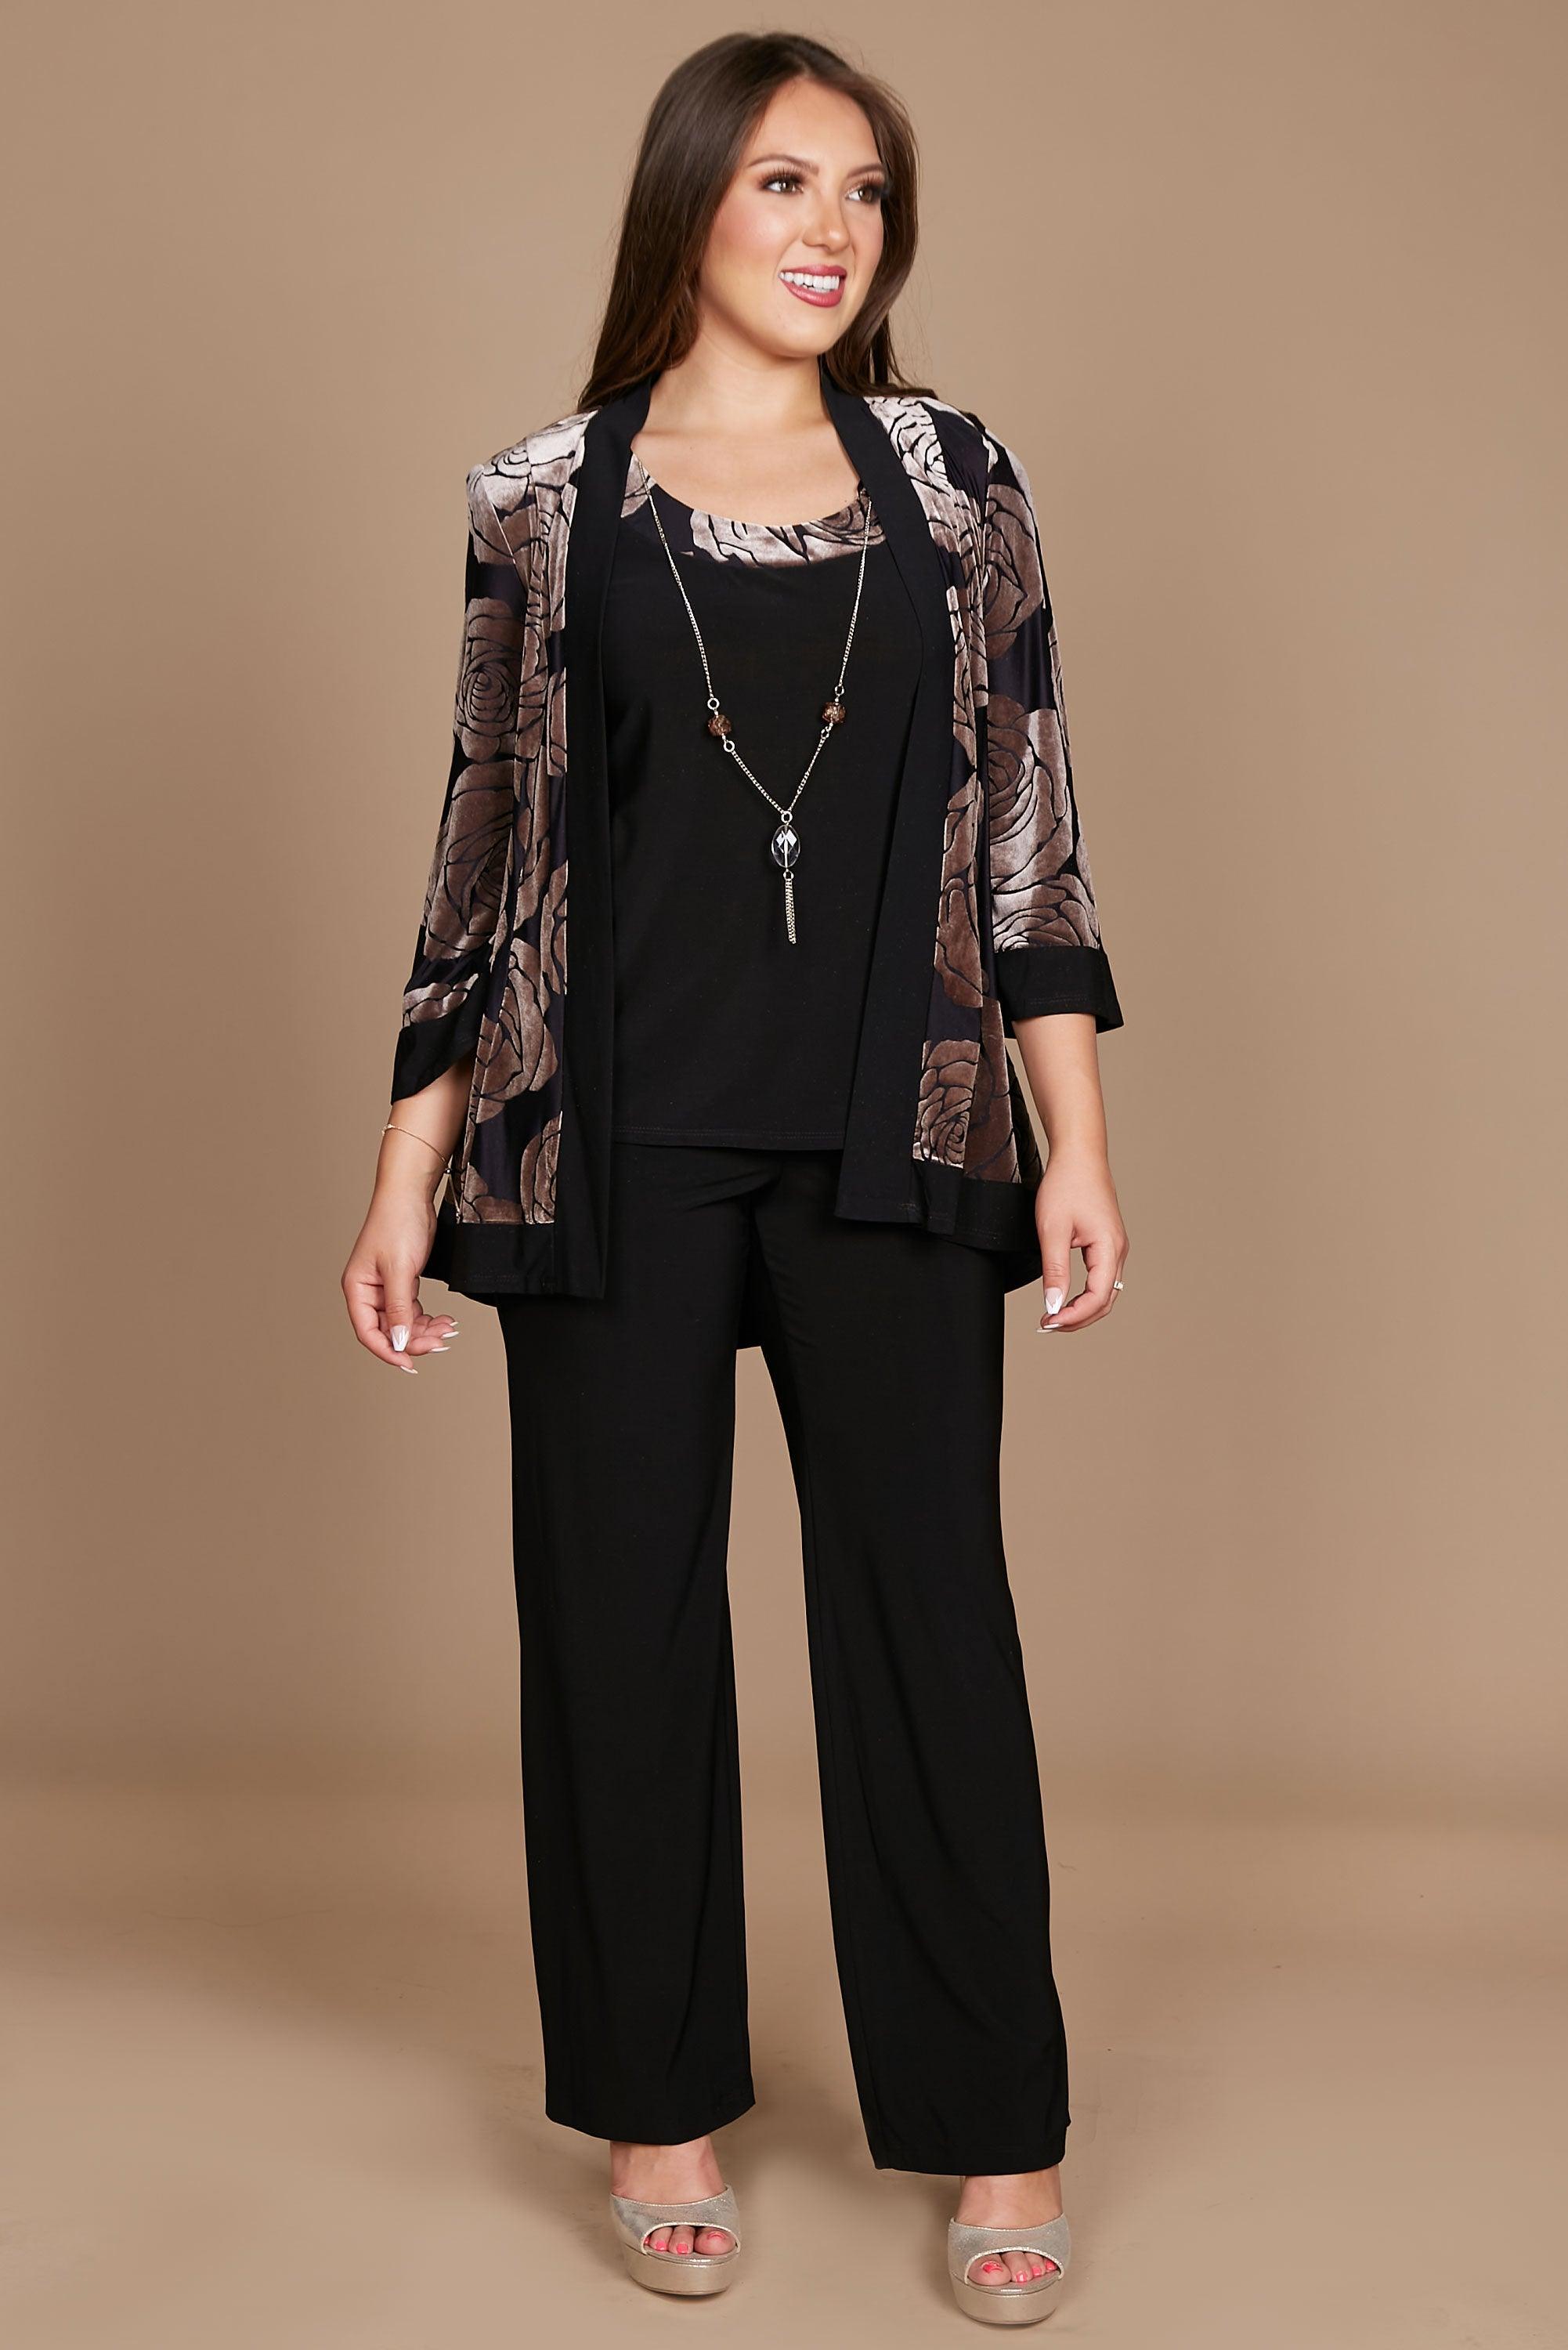 R&M Richards 9017W Formal Plus Size Black Pant Suit | The Dress Outlet